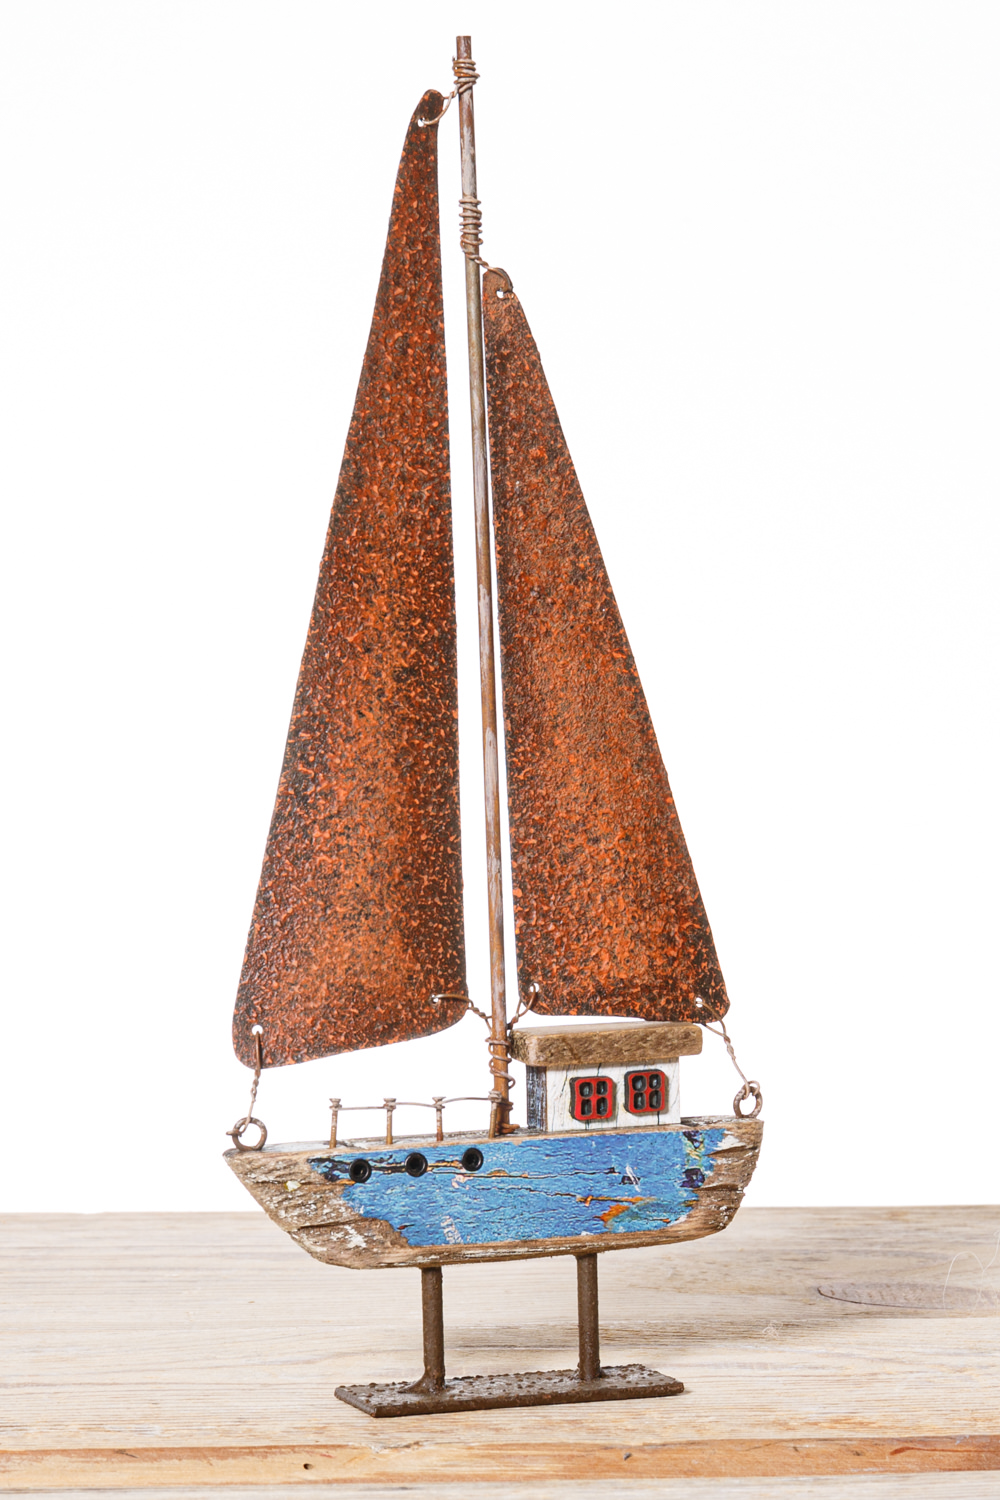 Textil Segelboot zur Dekoration 20 x 15 x 3 cm Holz 